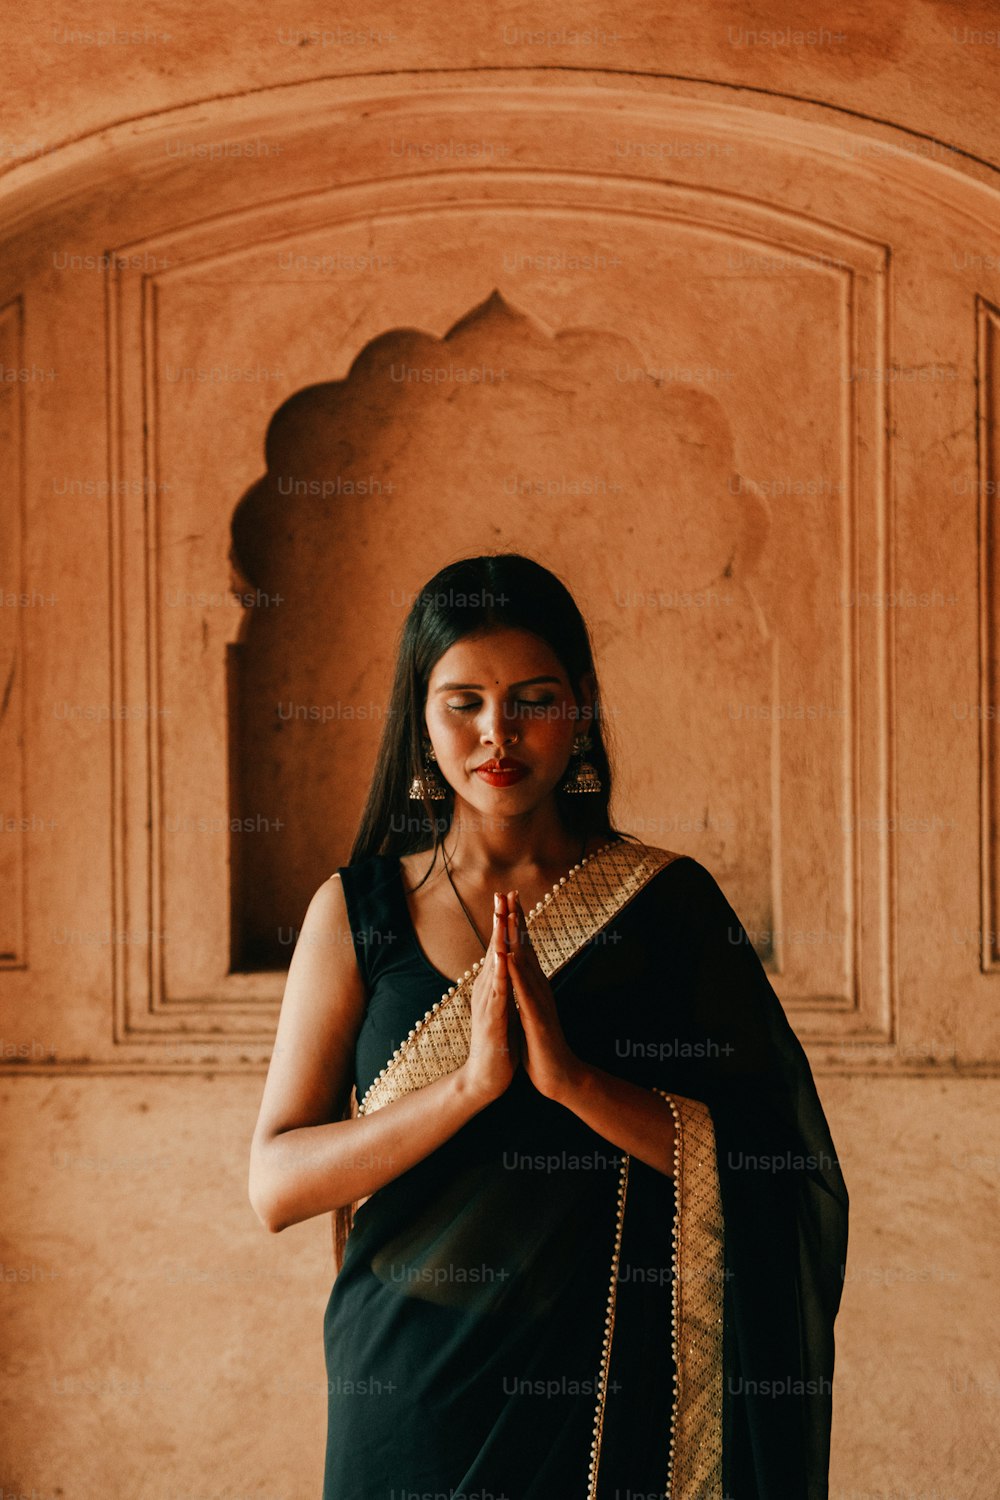 Eine Frau in einem schwarzen Sari, die vor einer Wand steht